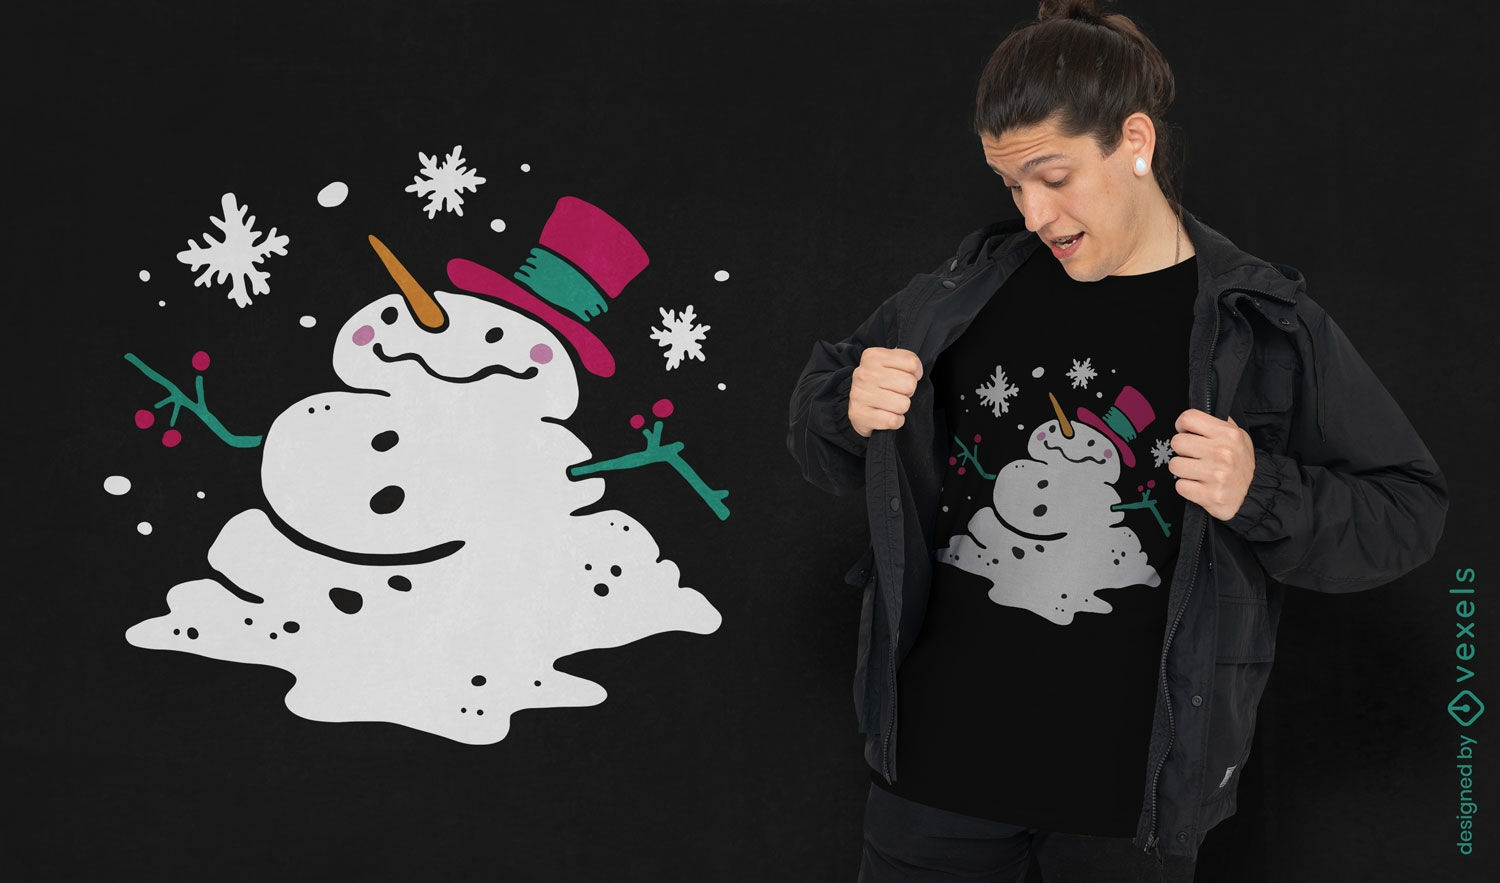 Joyful snowman t-shirt design